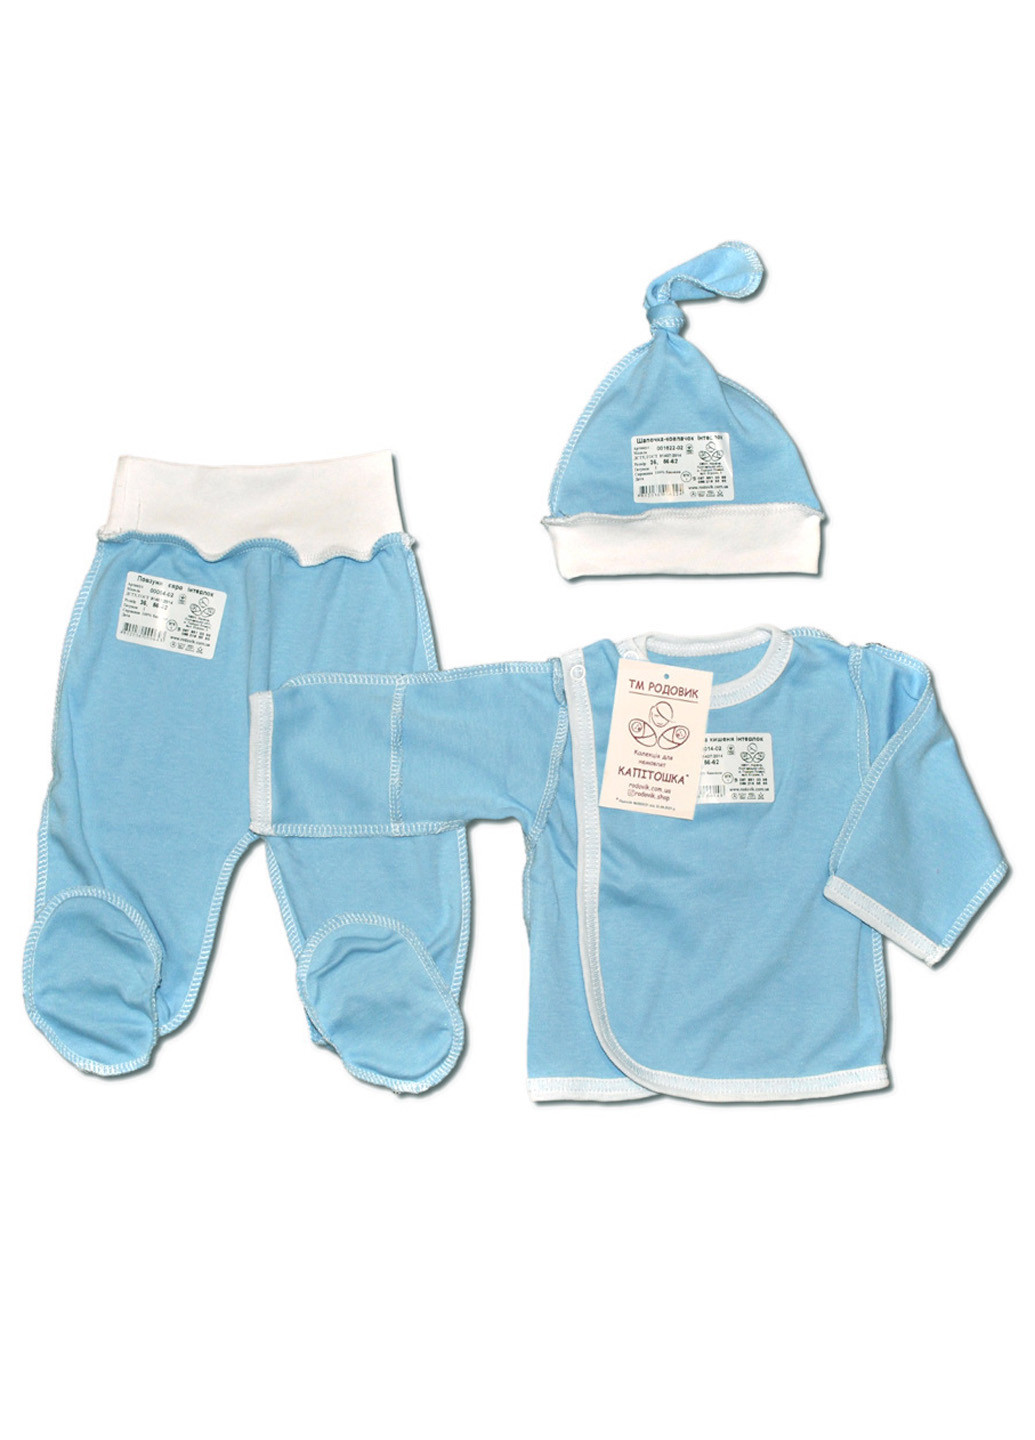 Голубой демисезонный костюм для новорожденных №1 (3 предмета) тм коллекция капитошка белый тройка Родовик 01-БХГ